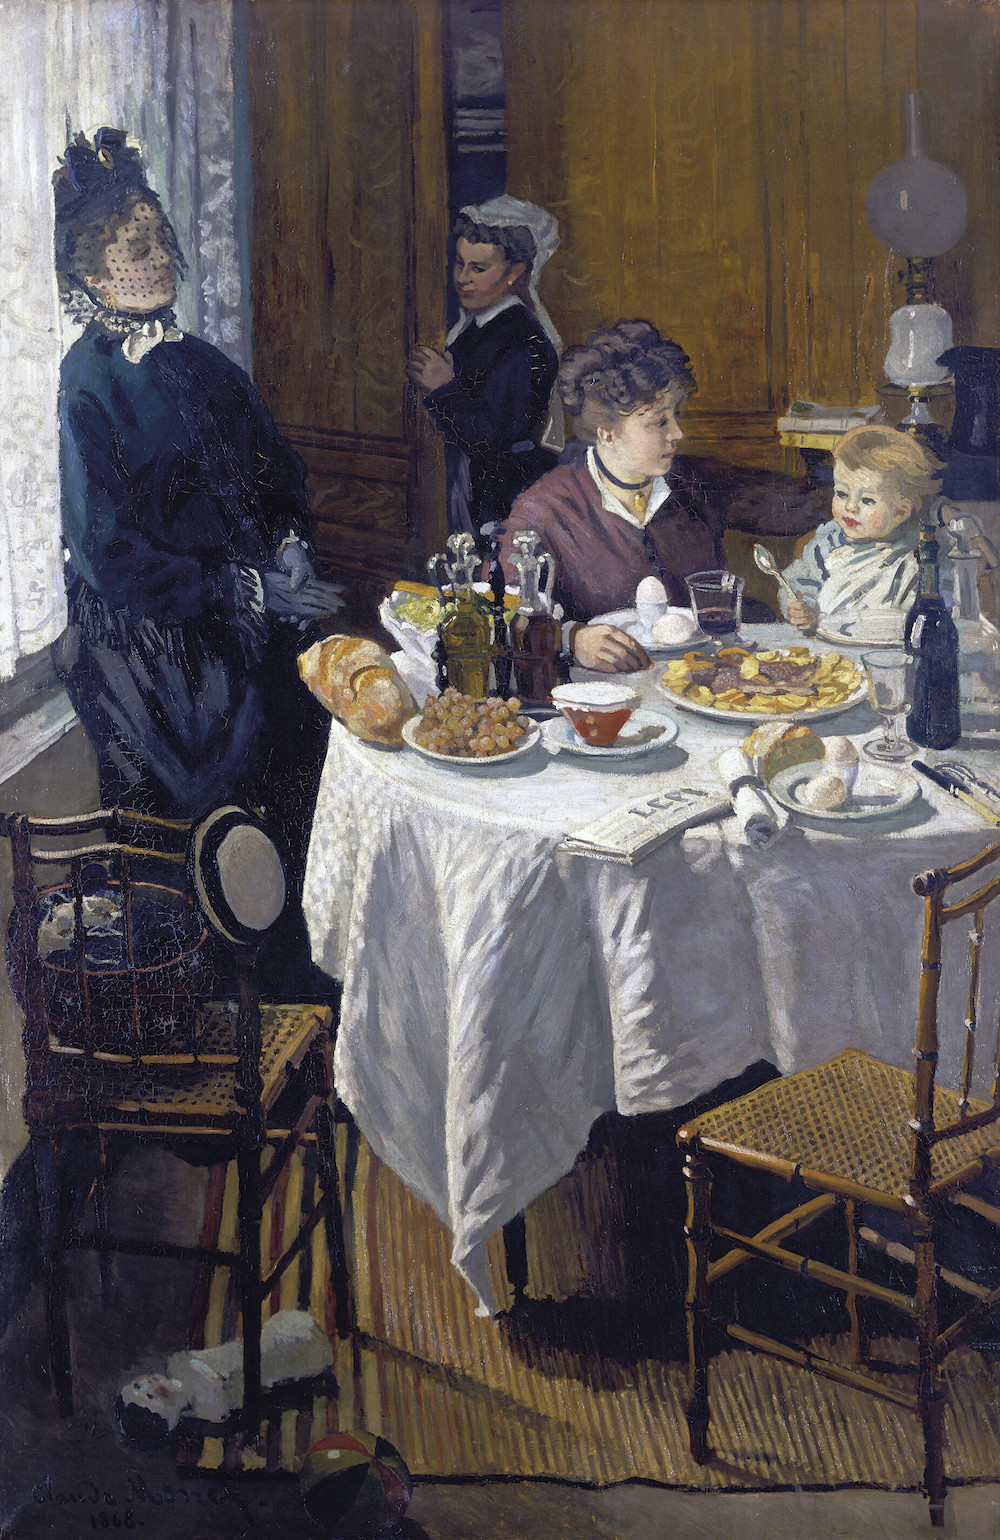 《昼食》1868-69年 油彩、カンヴァス 231.5×151.5cmシュテーデル美術館  (C) Städel Museum, Frankfurt am Main